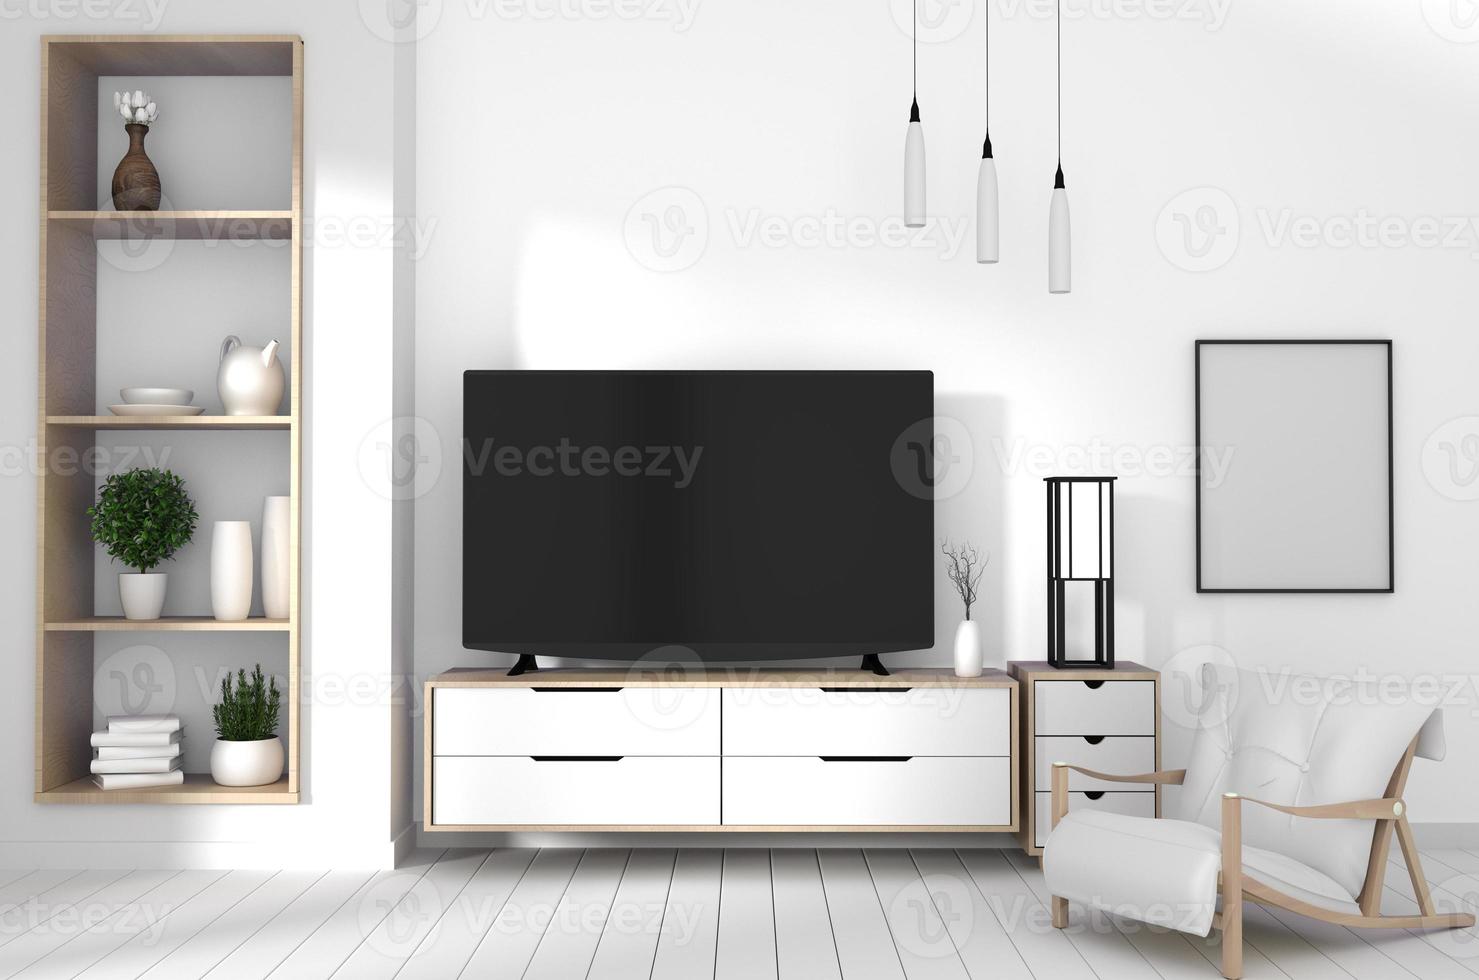 meuble tv sur parquet blanc et mur blanc, intérieur minimaliste et zen du salon style japonais.rendu 3d photo